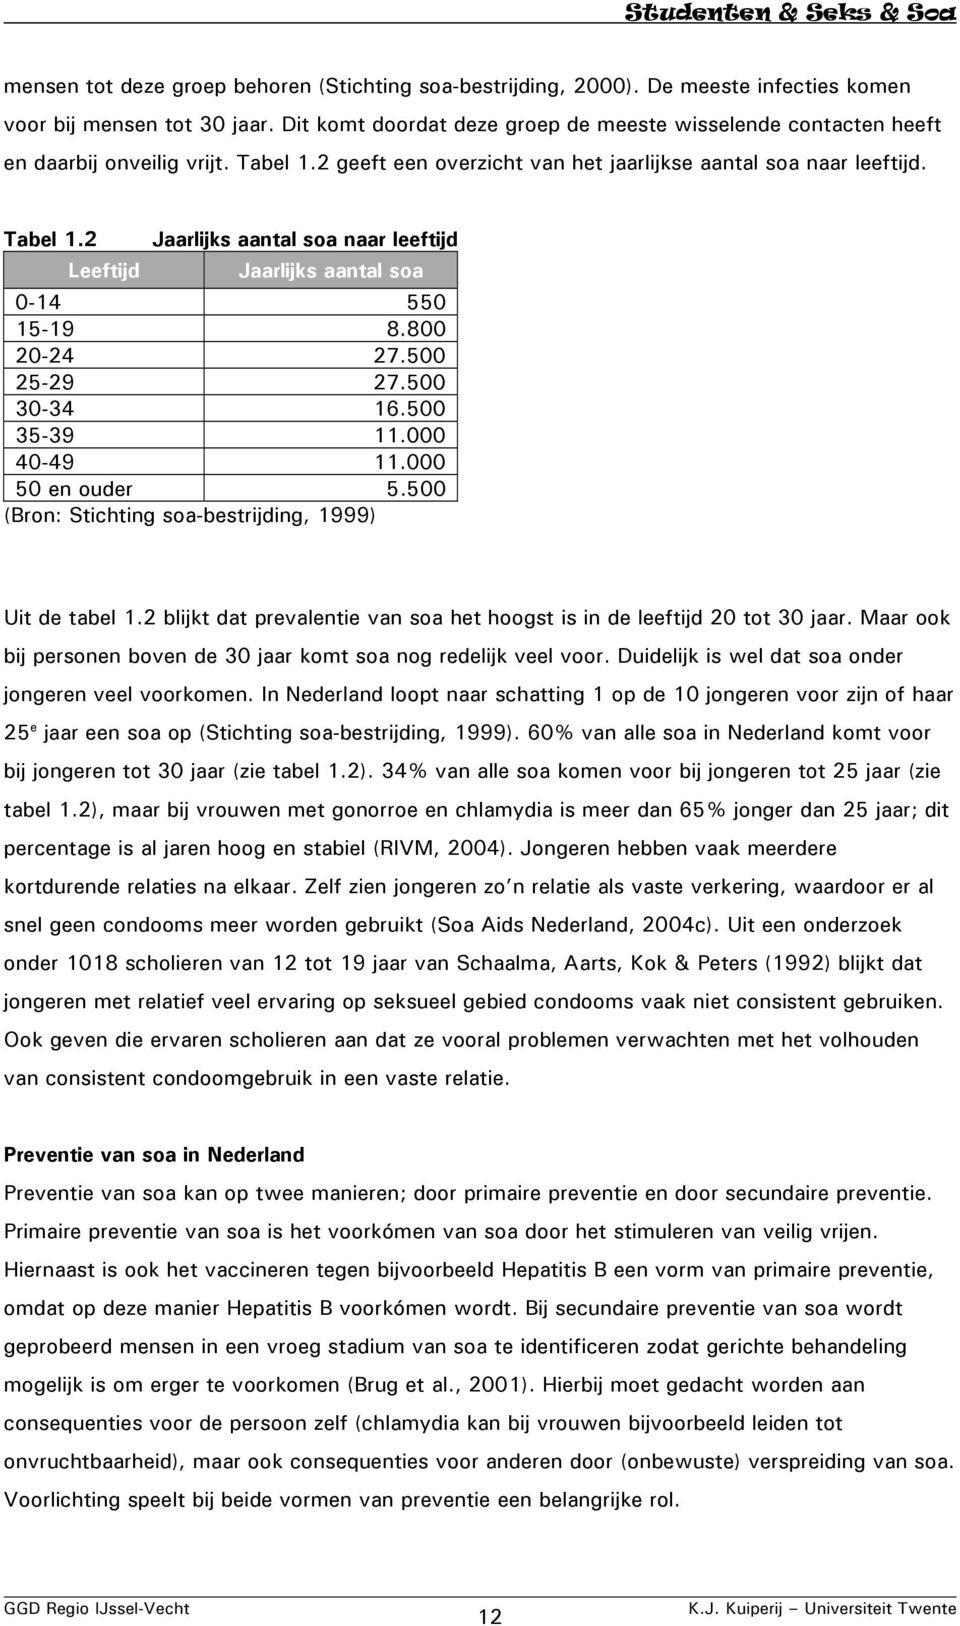 800 20-24 27.500 25-29 27.500 30-34 16.500 35-39 11.000 40-49 11.000 50 en ouder 5.500 (Bron: Stichting soa-bestrijding, 1999) Uit de tabel 1.